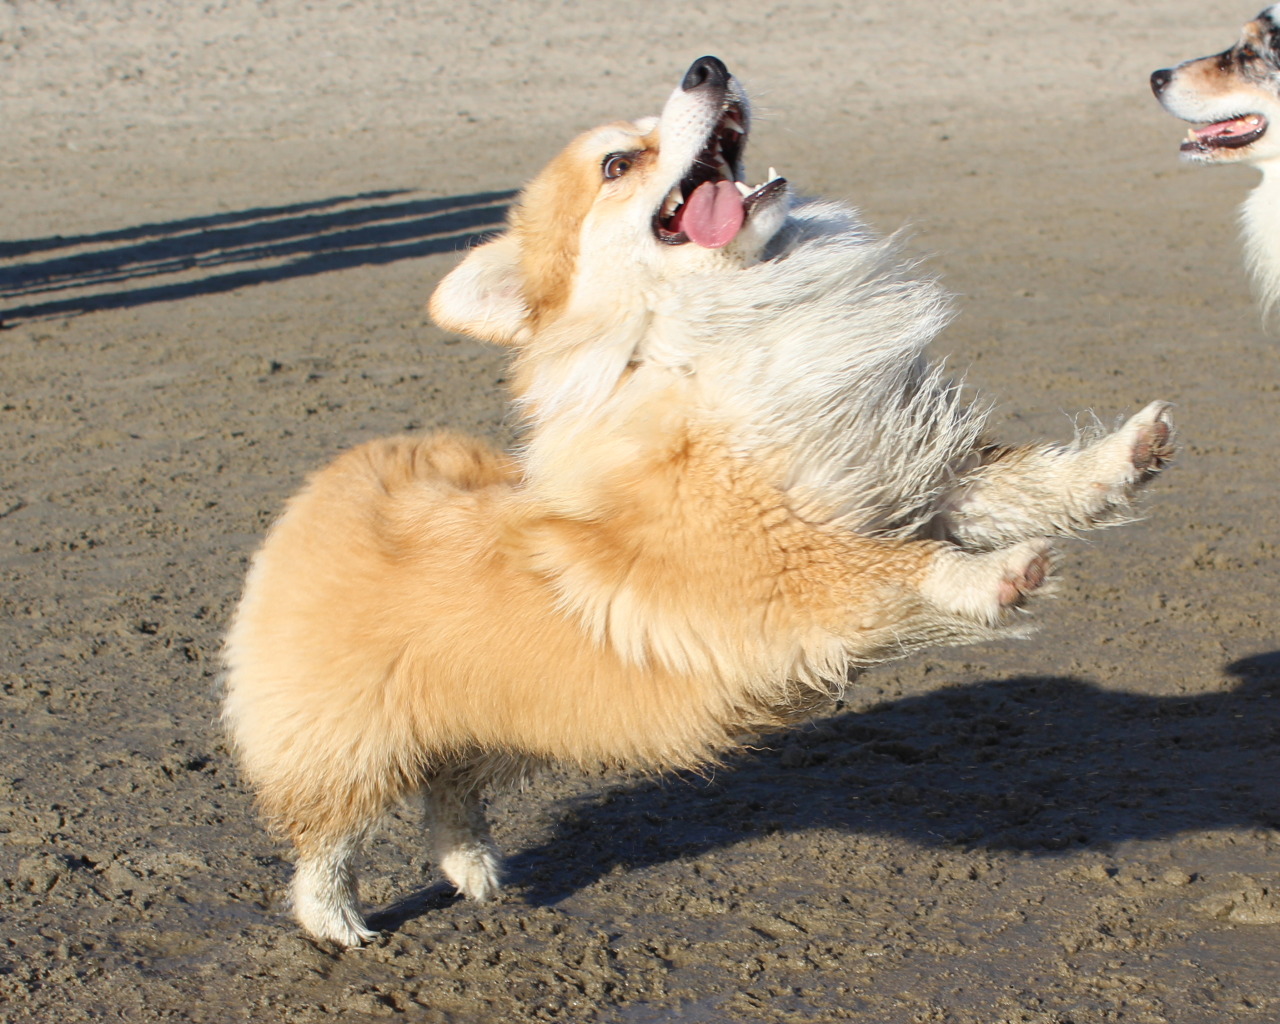 A Corgi jumping at the beach